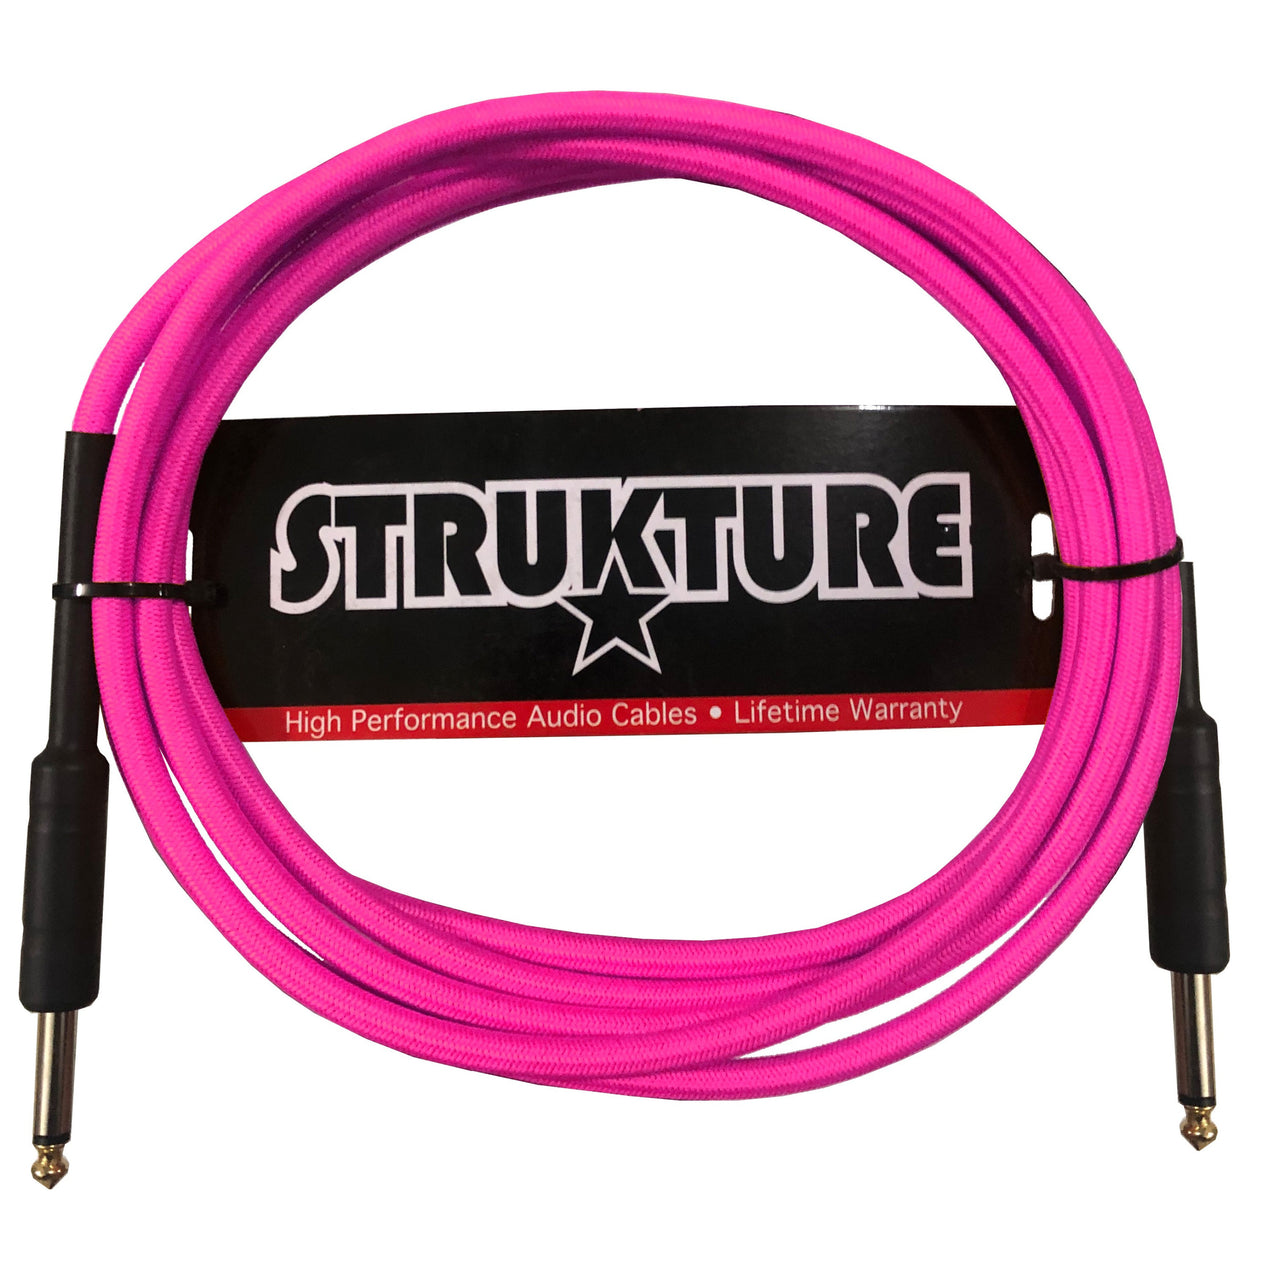 Cable Strukture Sc10np Para Instrumento 3.05 Metros Textil Rosa Neon